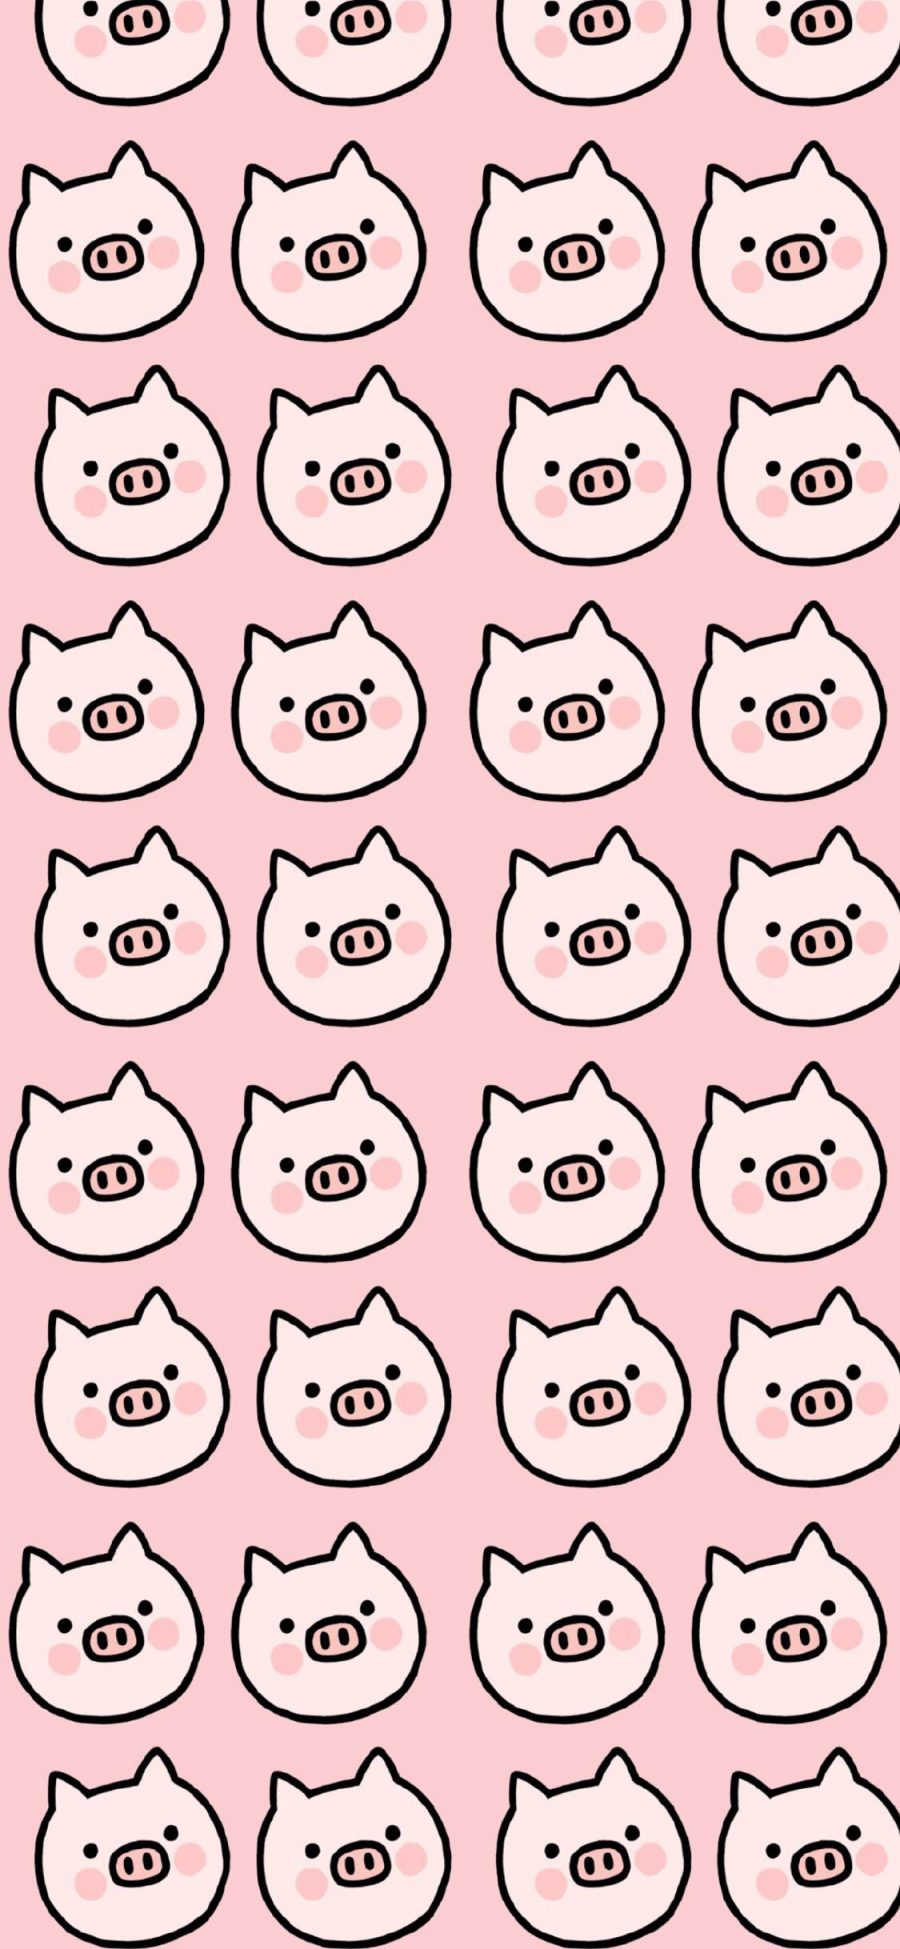 [2436×1125]猪 粉色 卡通 排列 平铺 苹果手机动漫壁纸图片